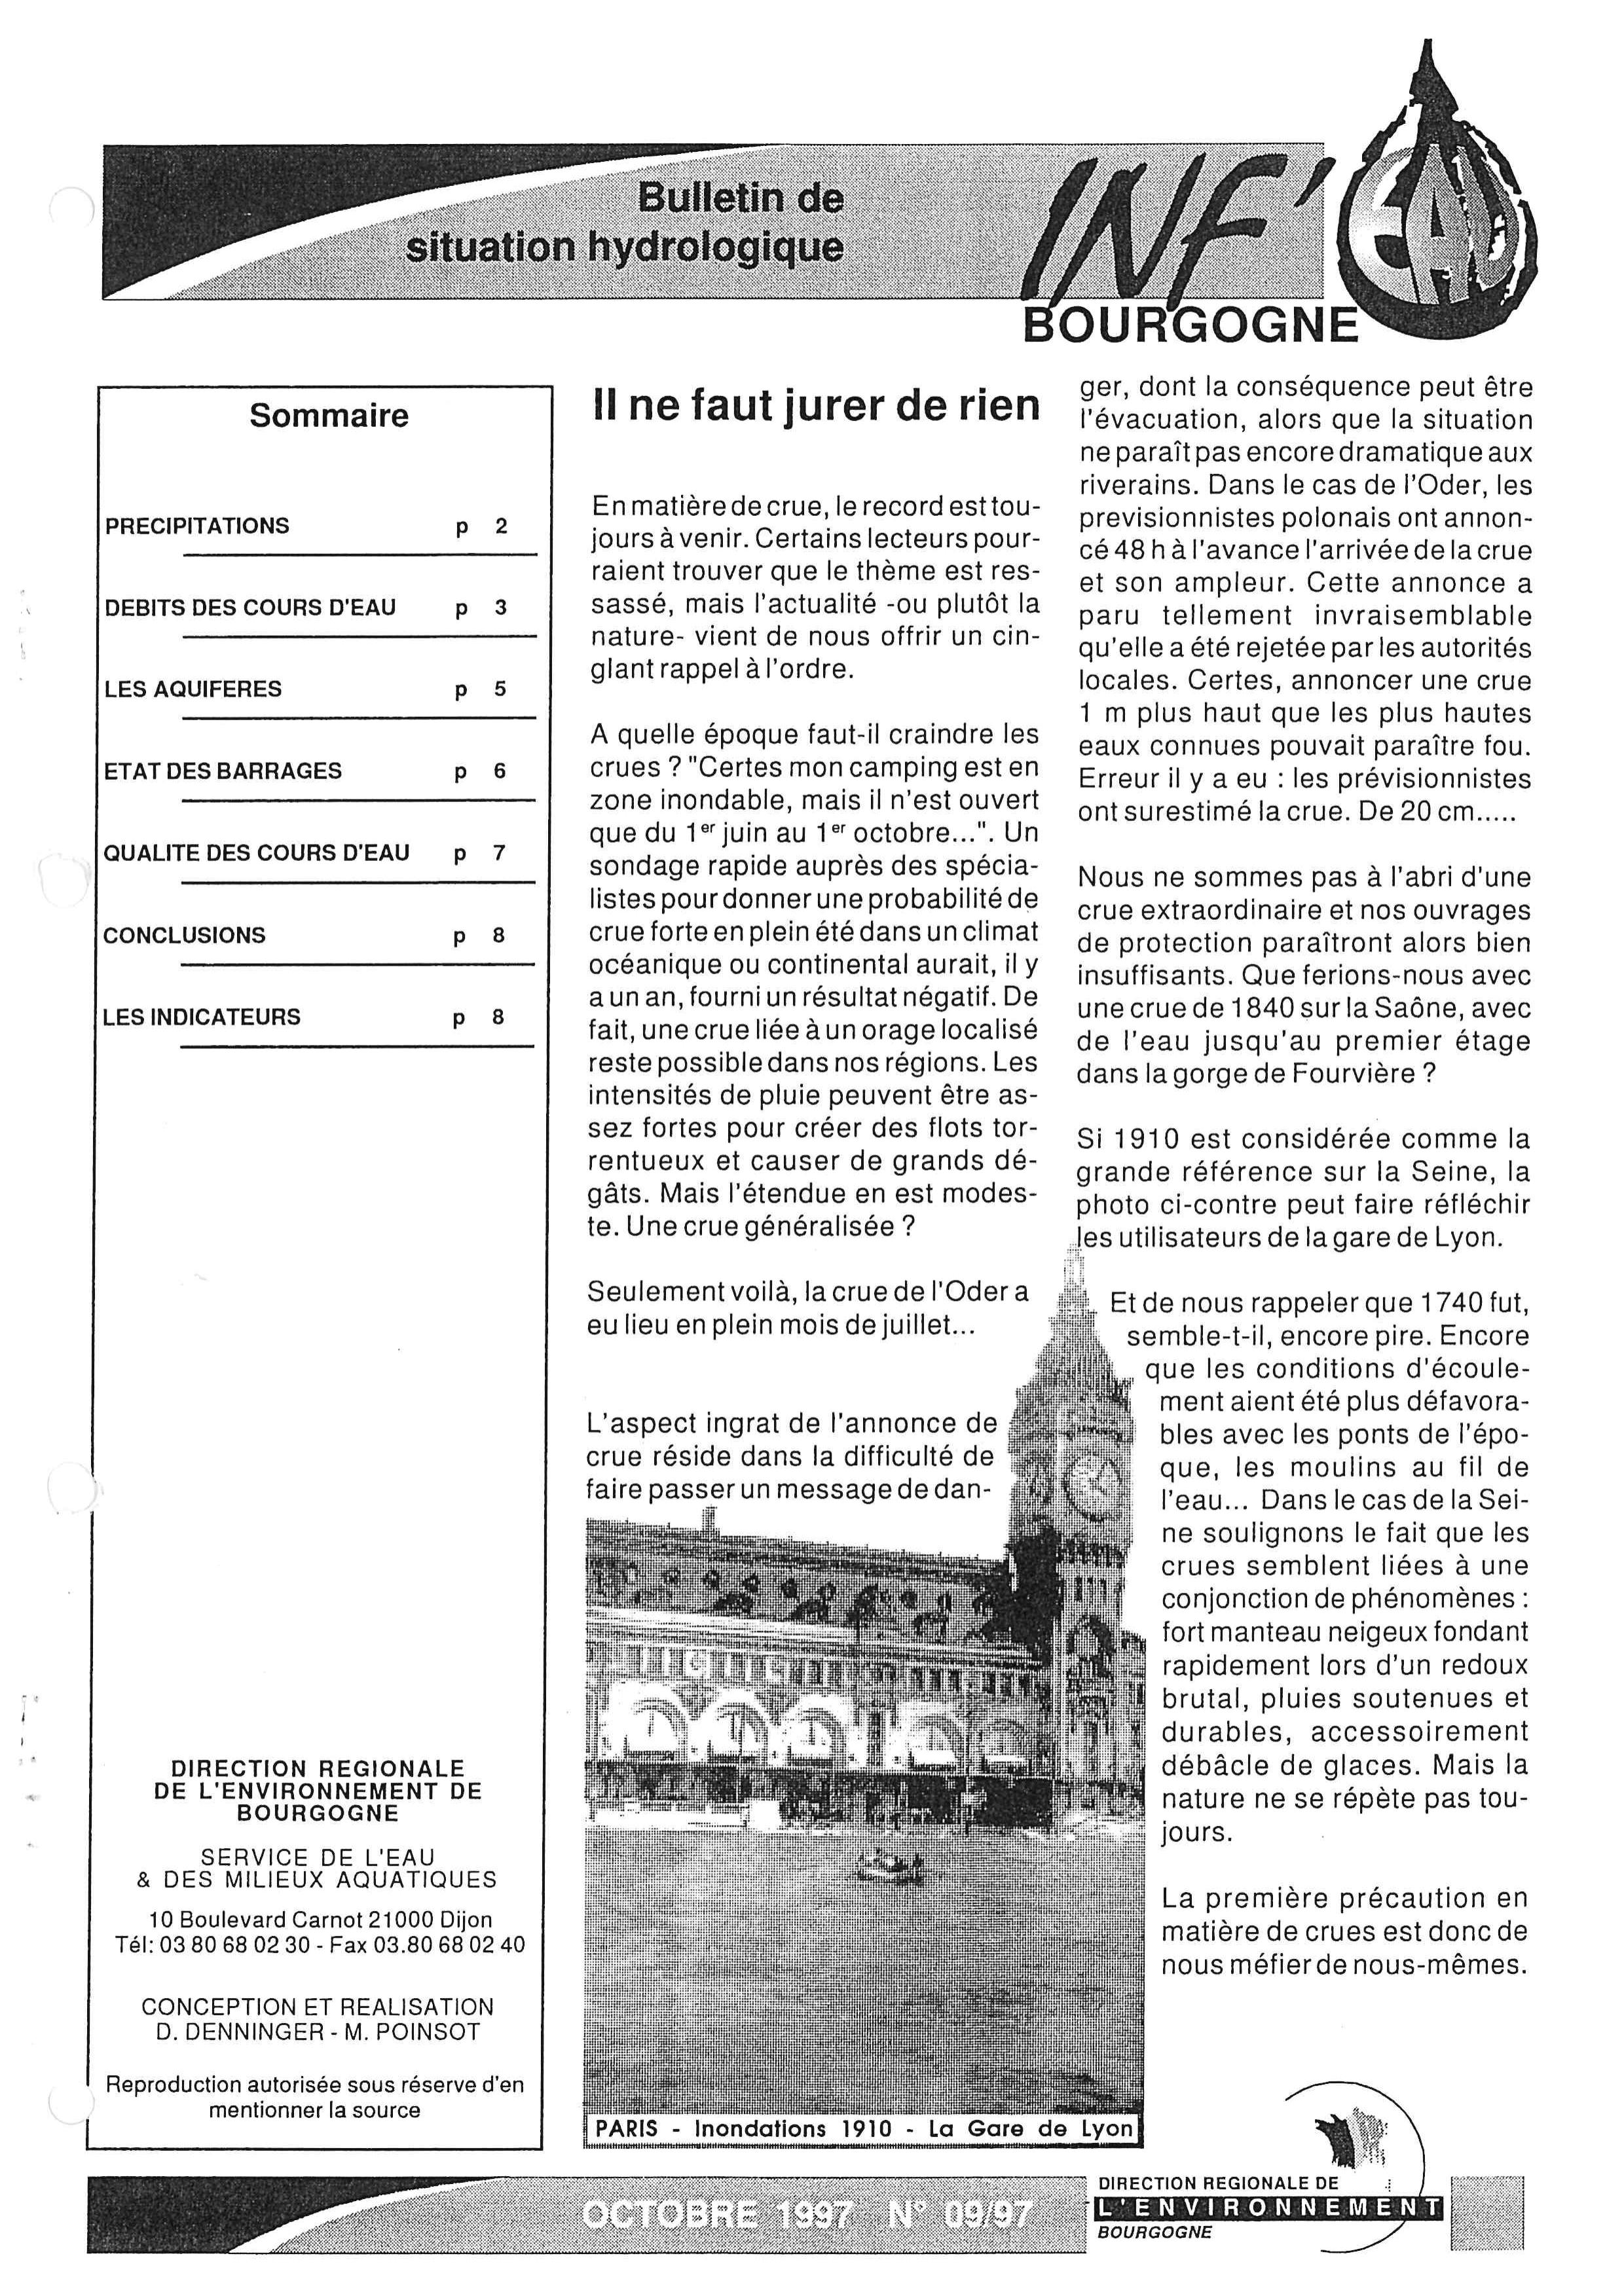 Bulletin hydrologique du mois de septembre 1997